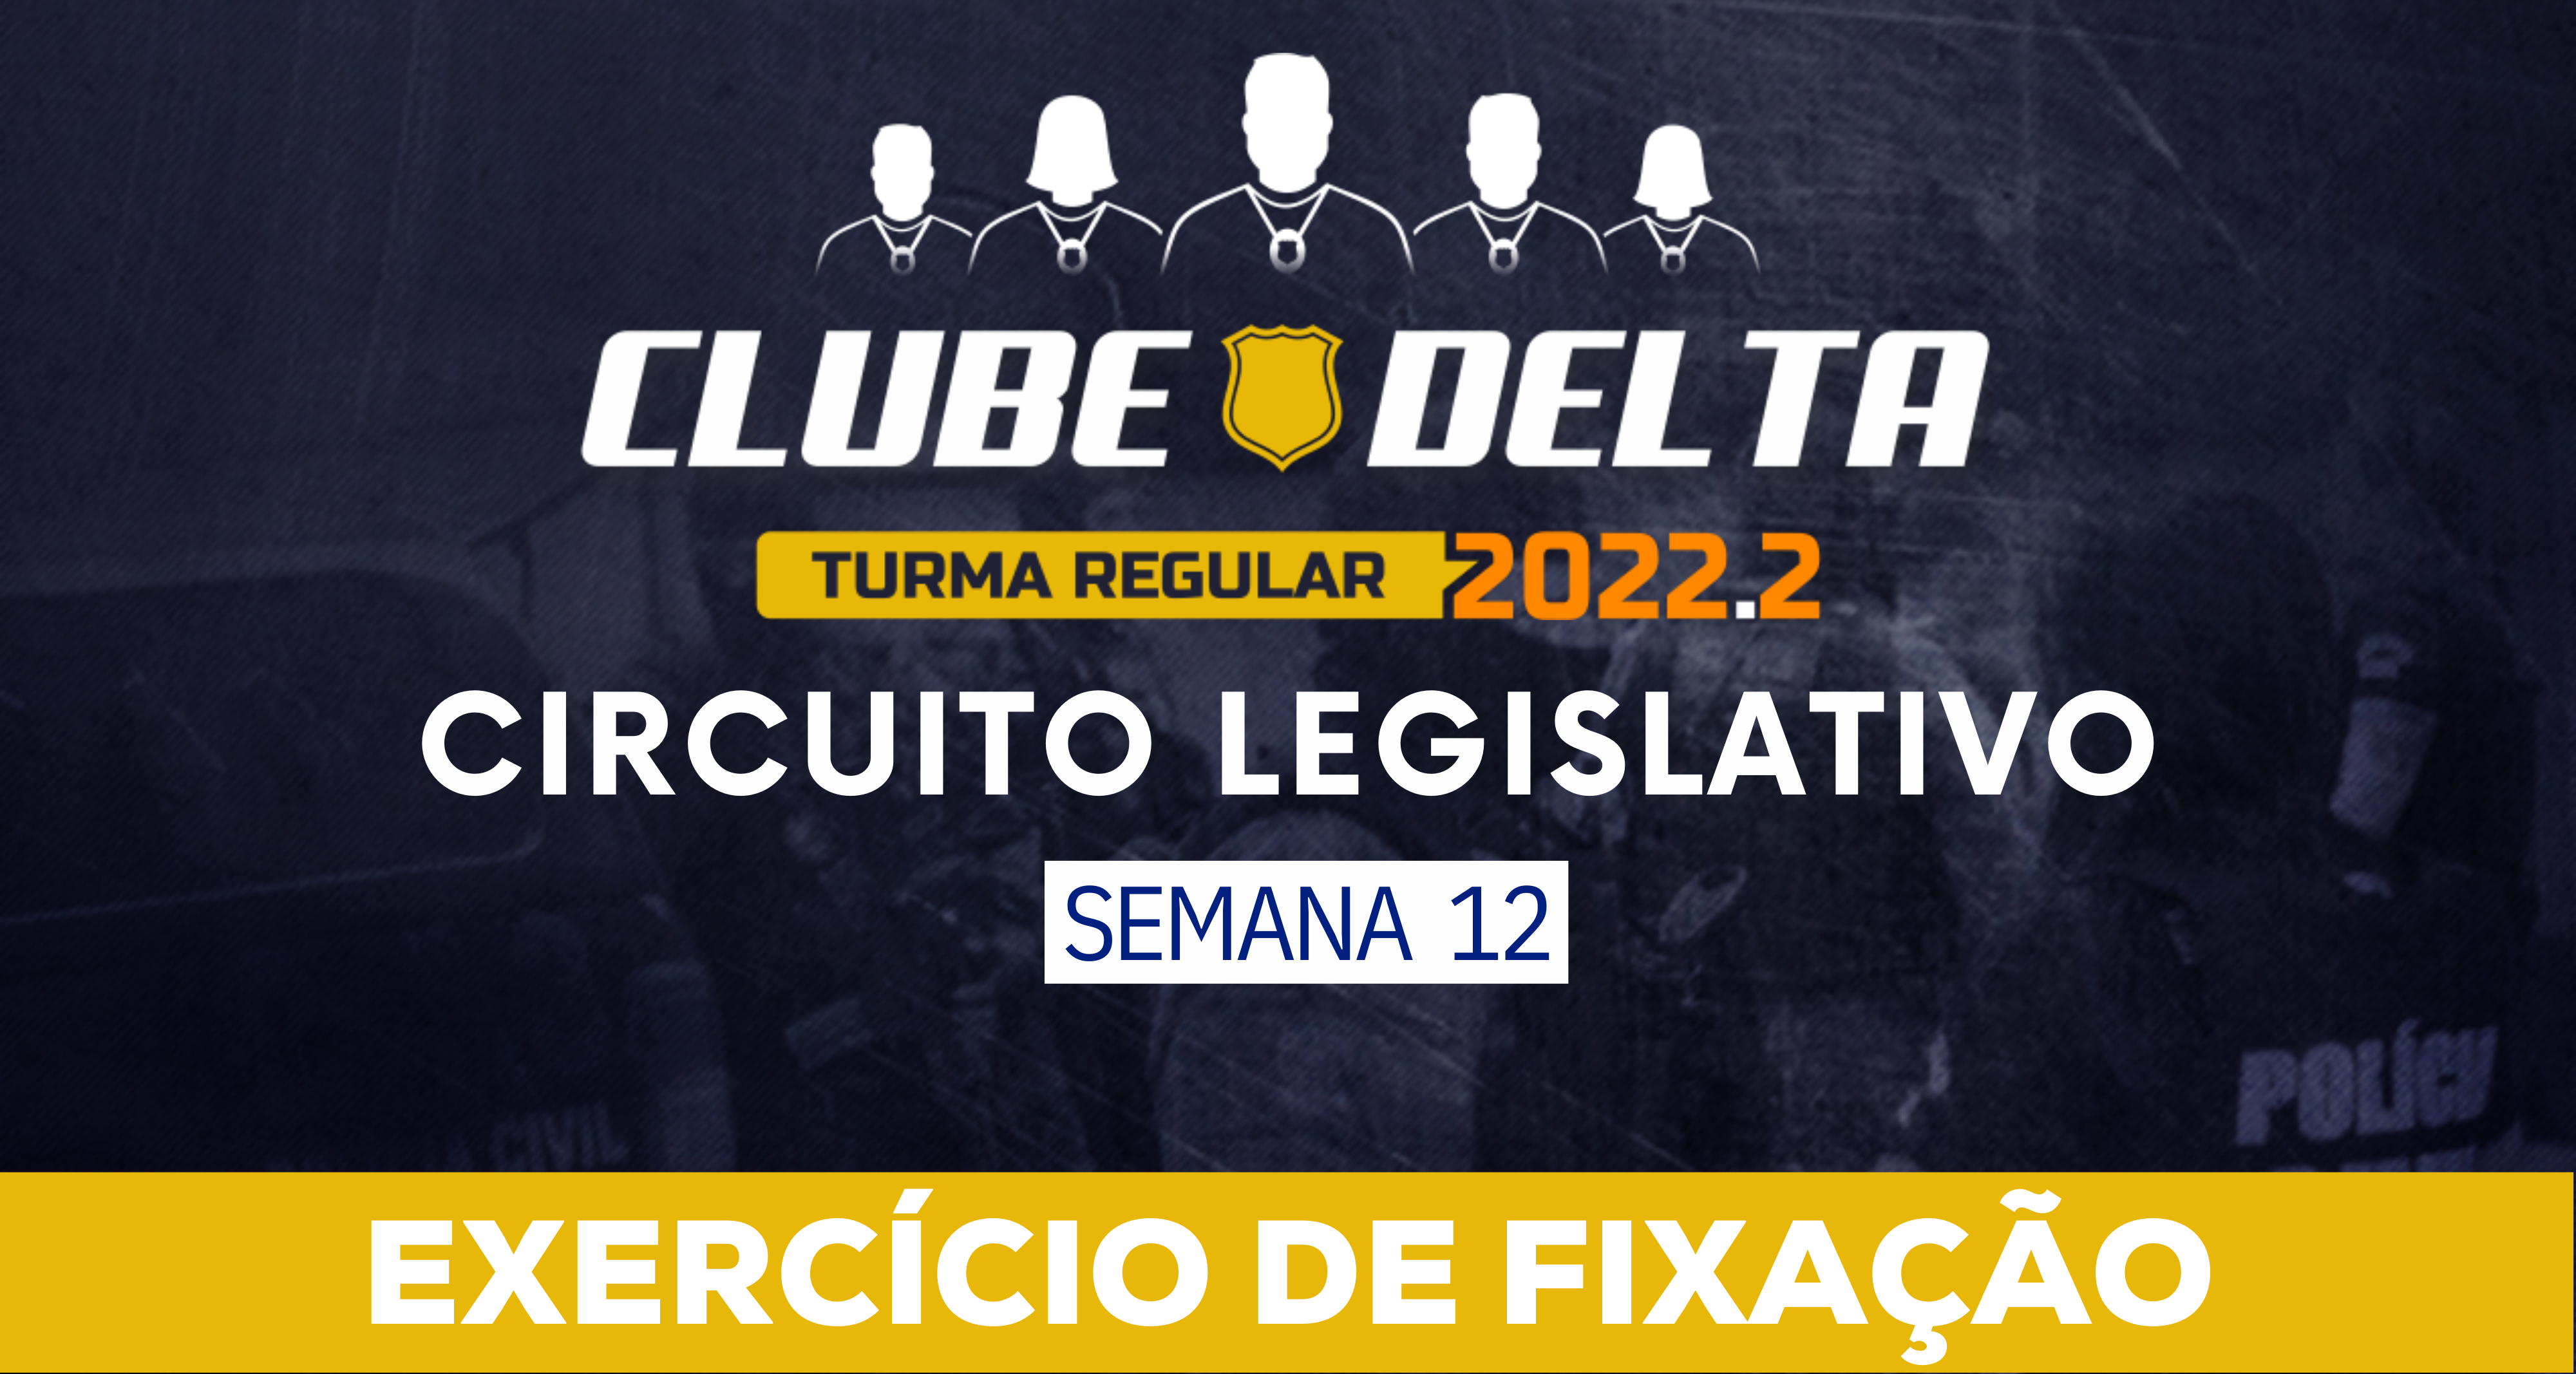 Circuito Legislativo 2022.2 (Clube Delta - Semana 12)